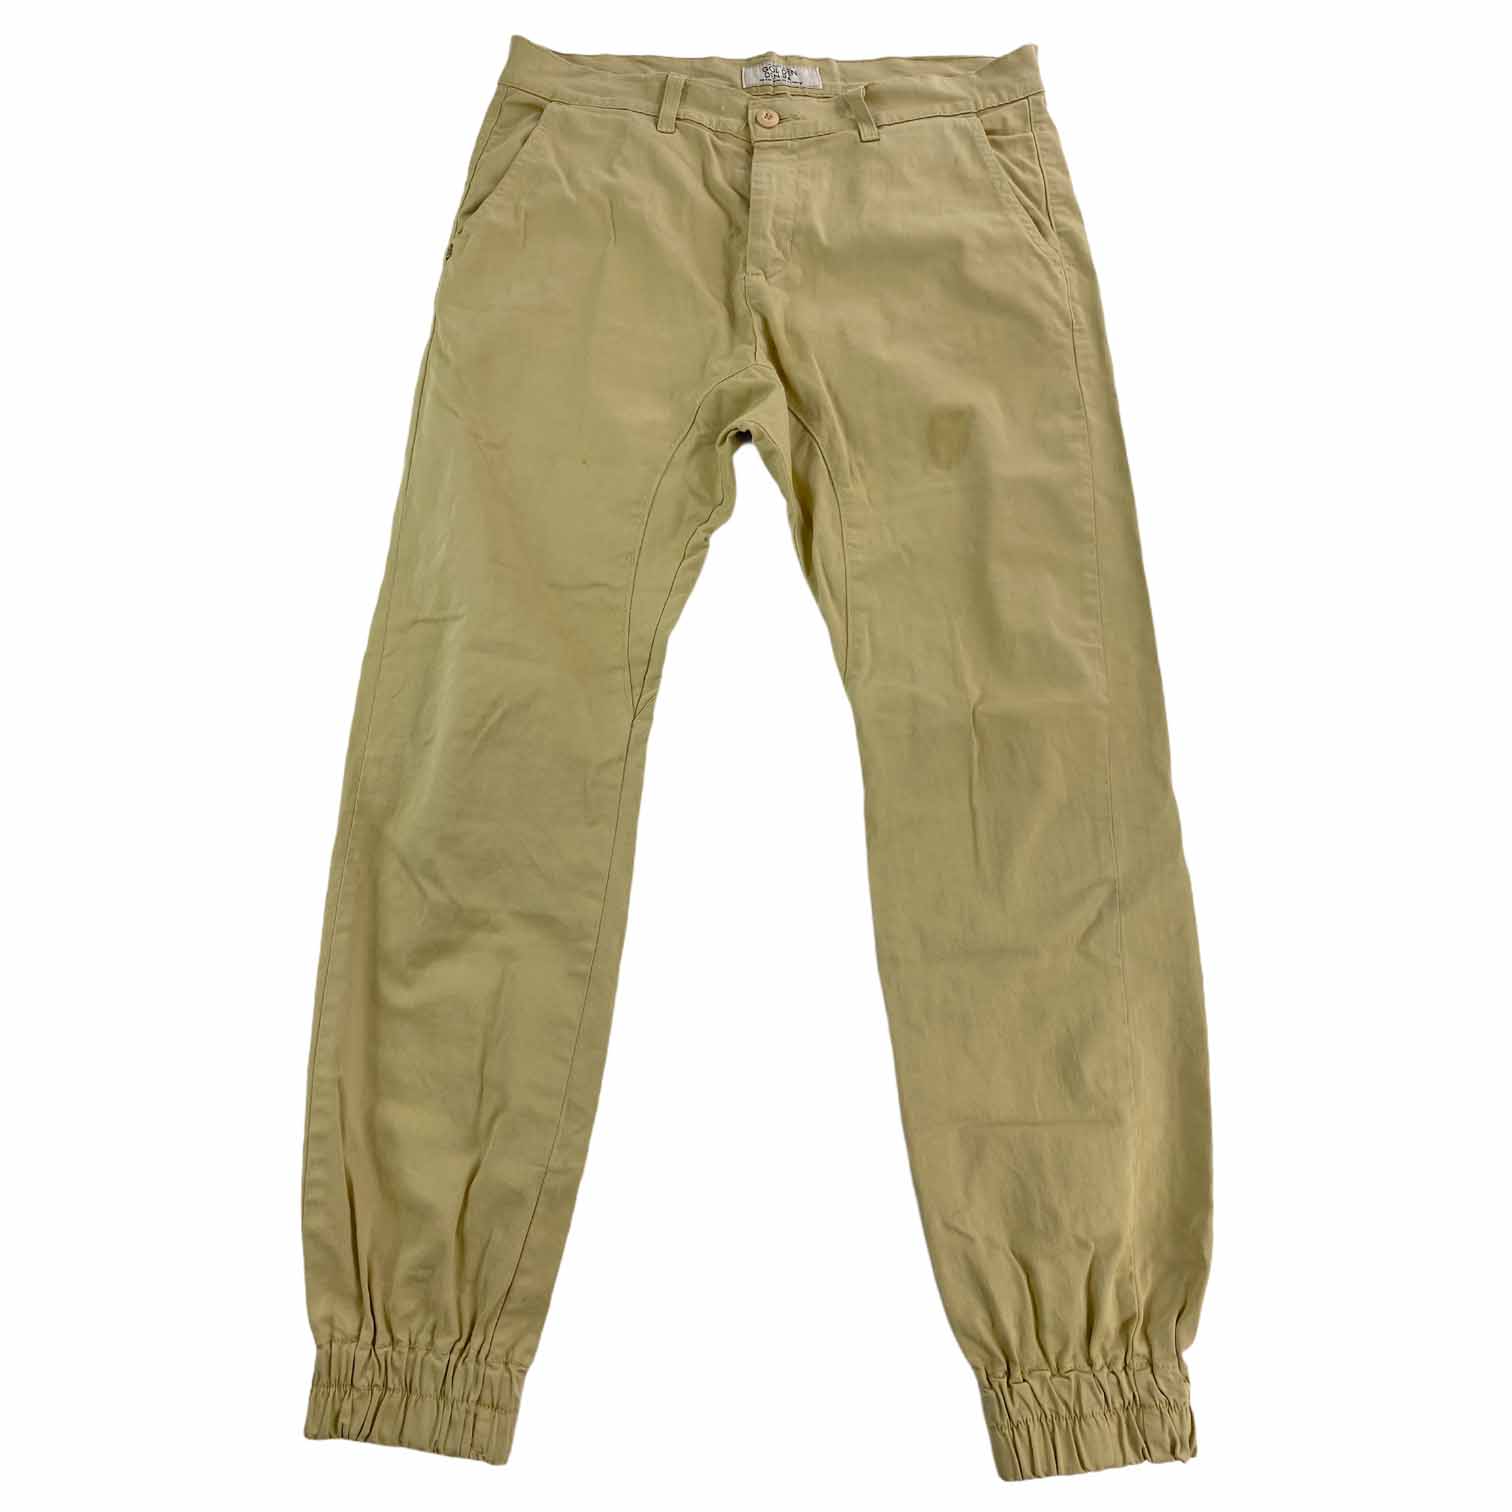 [Golden Denim] Cotton Jogger Pants Sand - Size 36